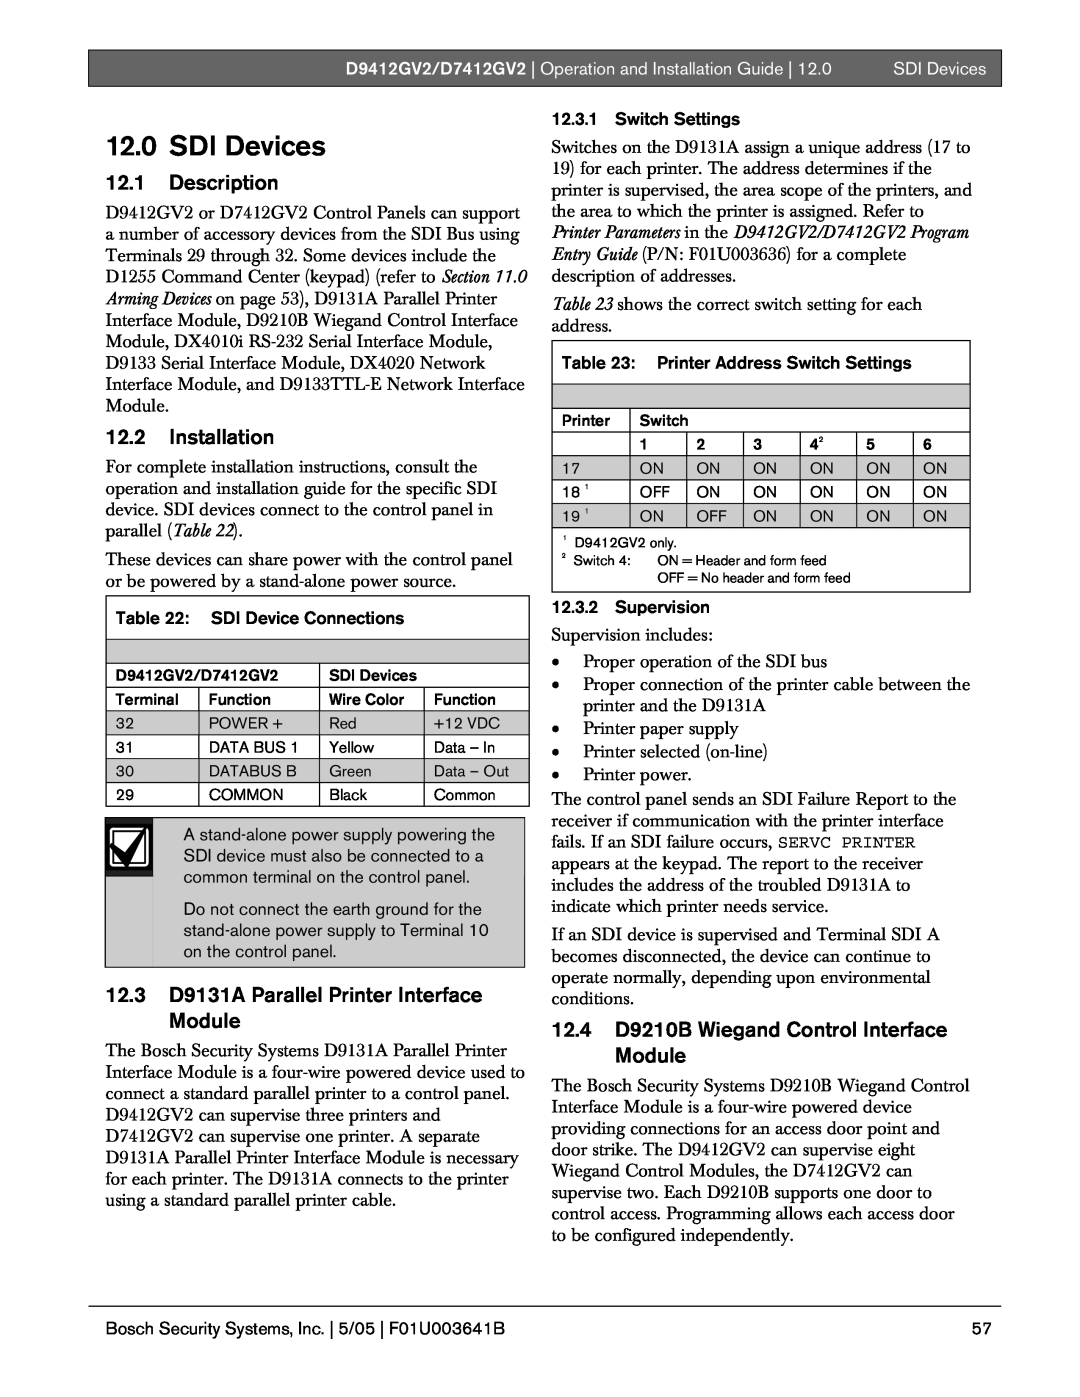 Bosch Appliances D9412GV2 12.0SDI Devices, 12.1Description, 12.2Installation, 12.3D9131A Parallel Printer Interface Module 